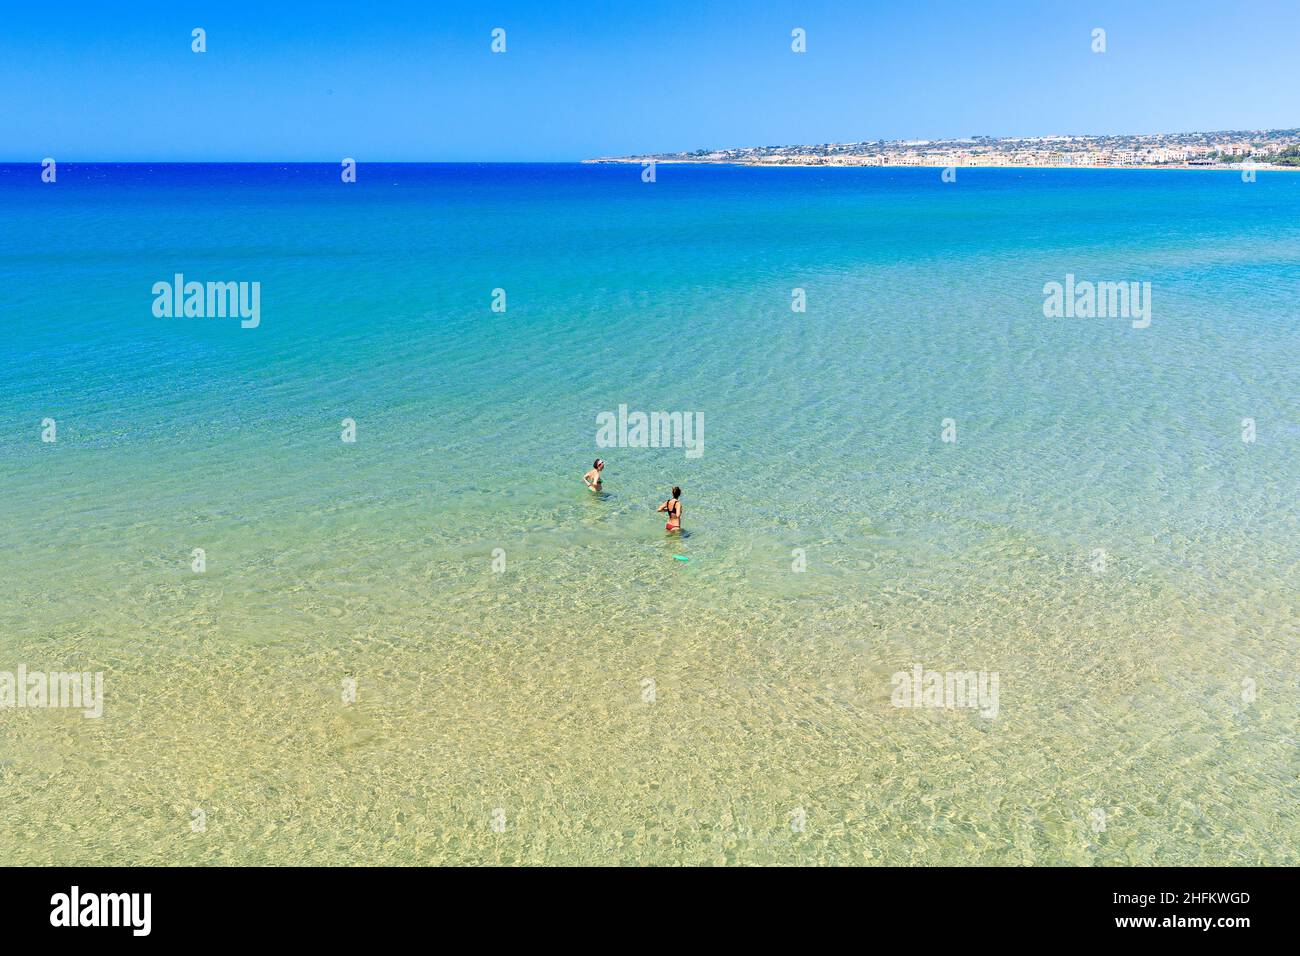 Spiaggia della Mannara, Sicily, Italy Stock Photo